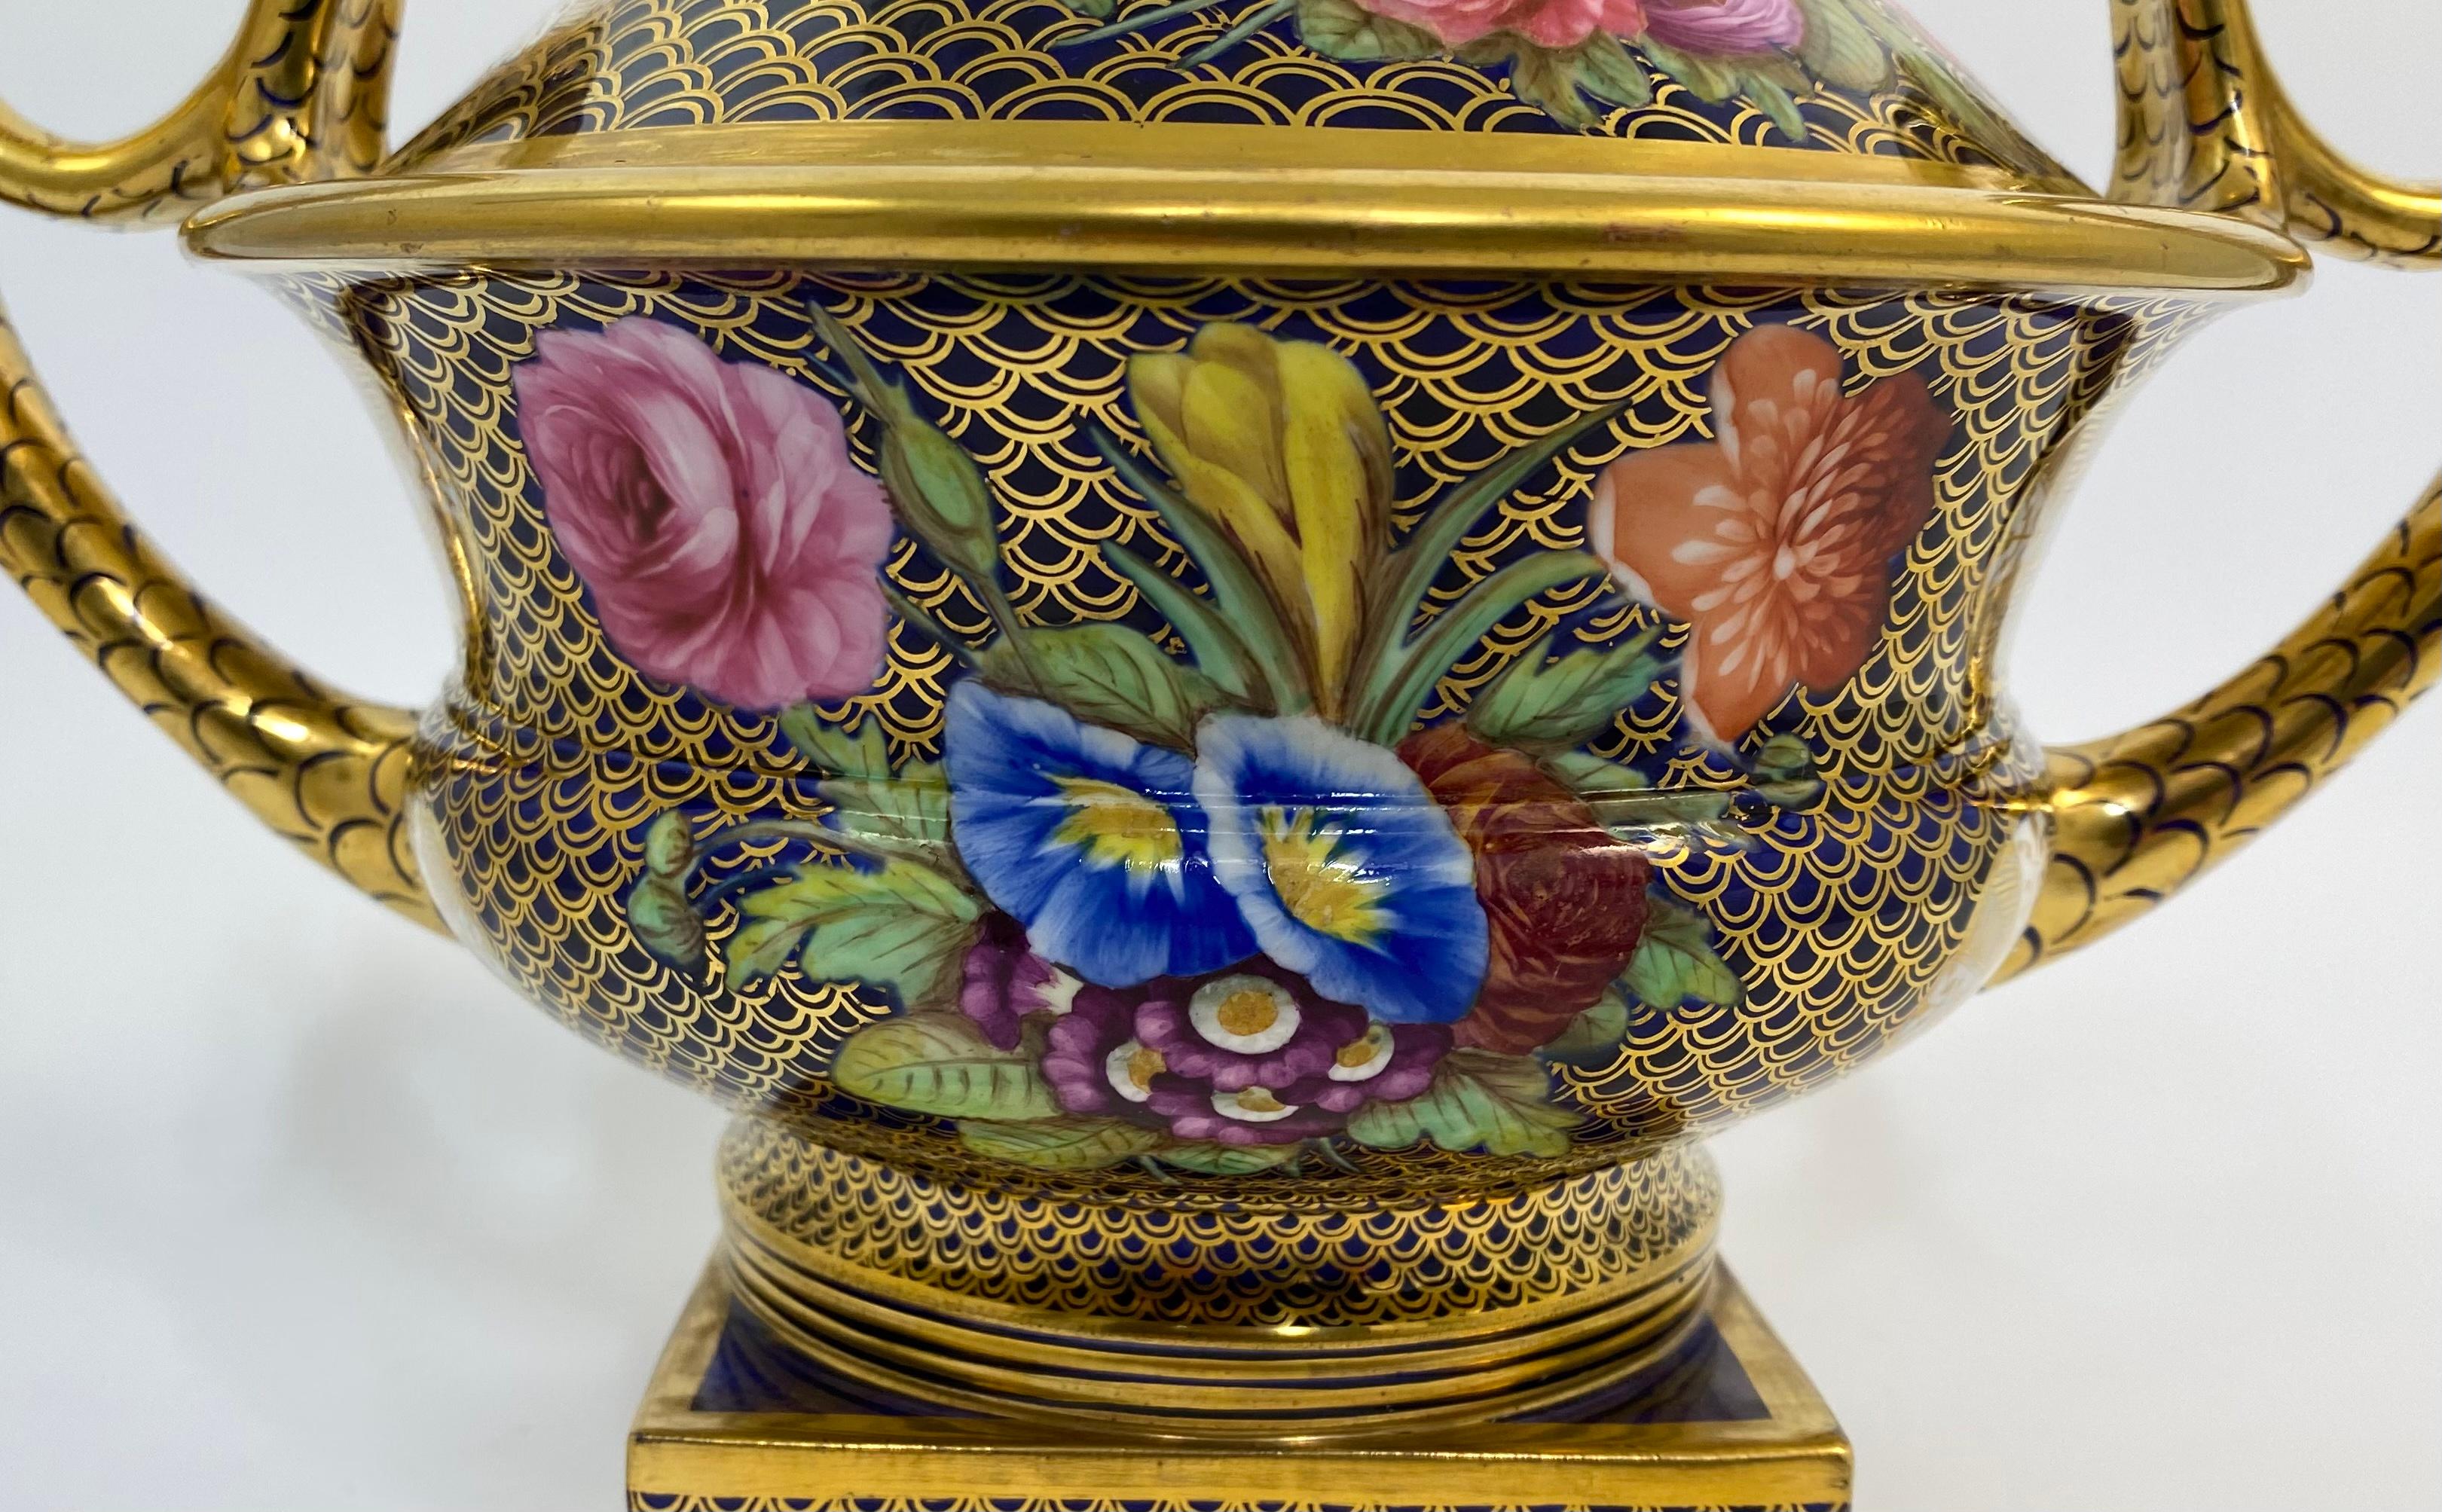 Porcelain Spode porcelain pot pourri and cover, ‘1166’ pattern, c. 1820.